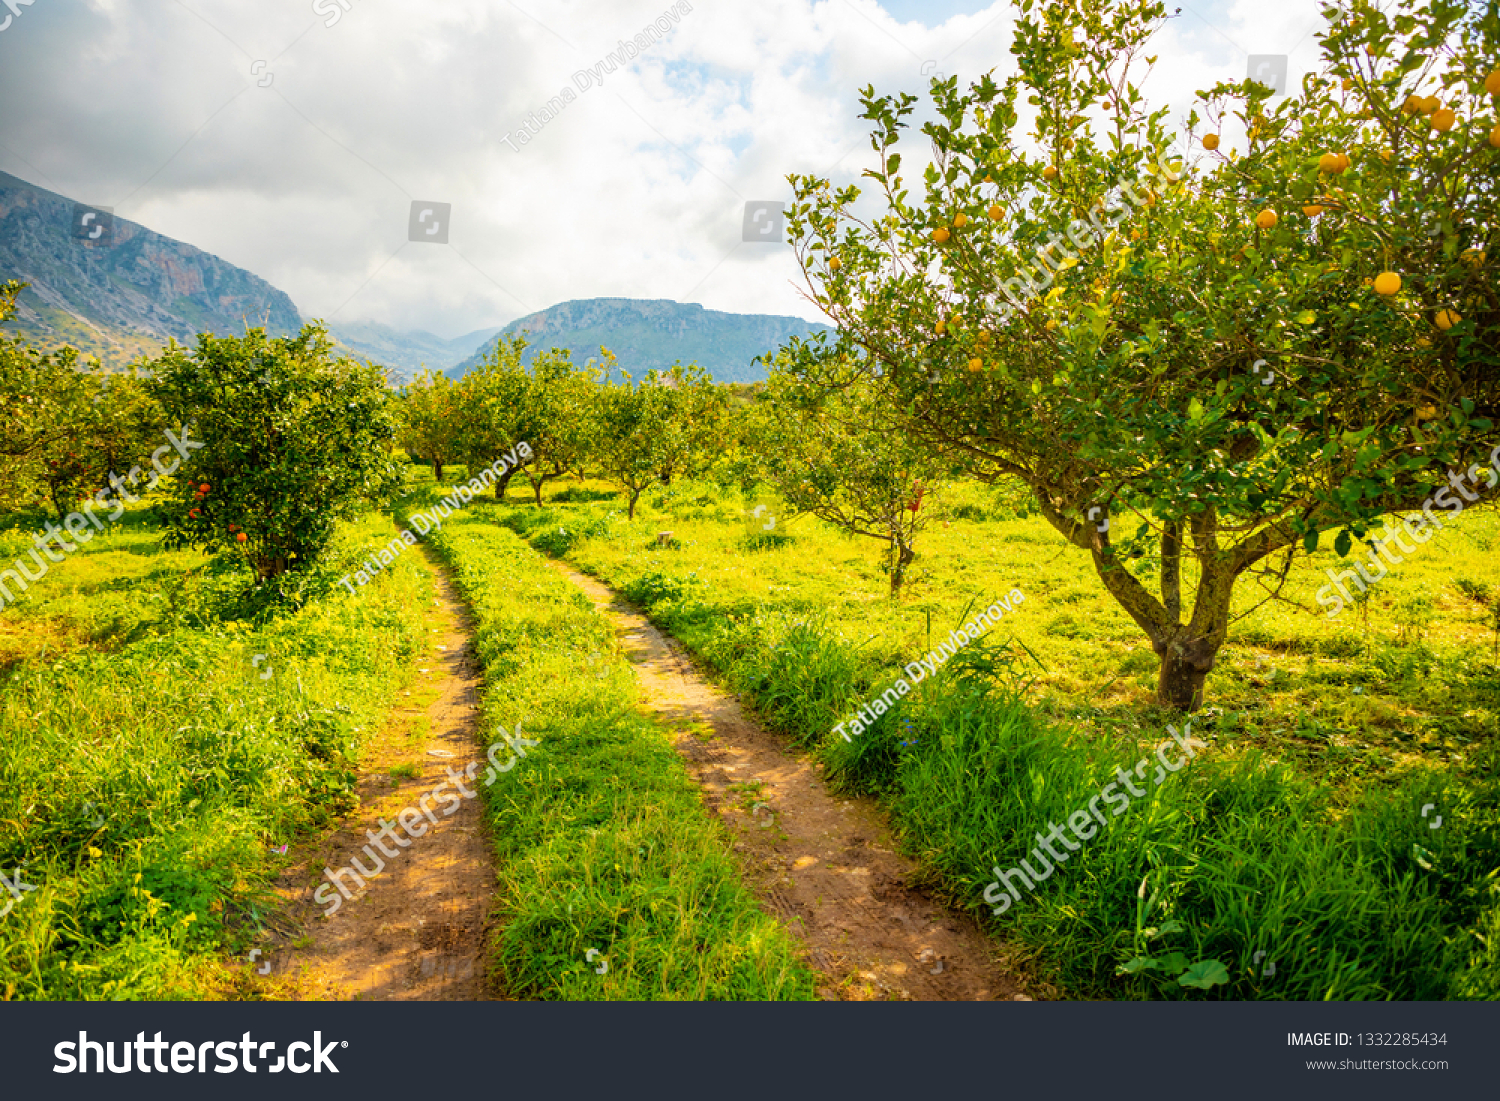 Lemon trees in a citrus grove in Sicily in Italy #1332285434